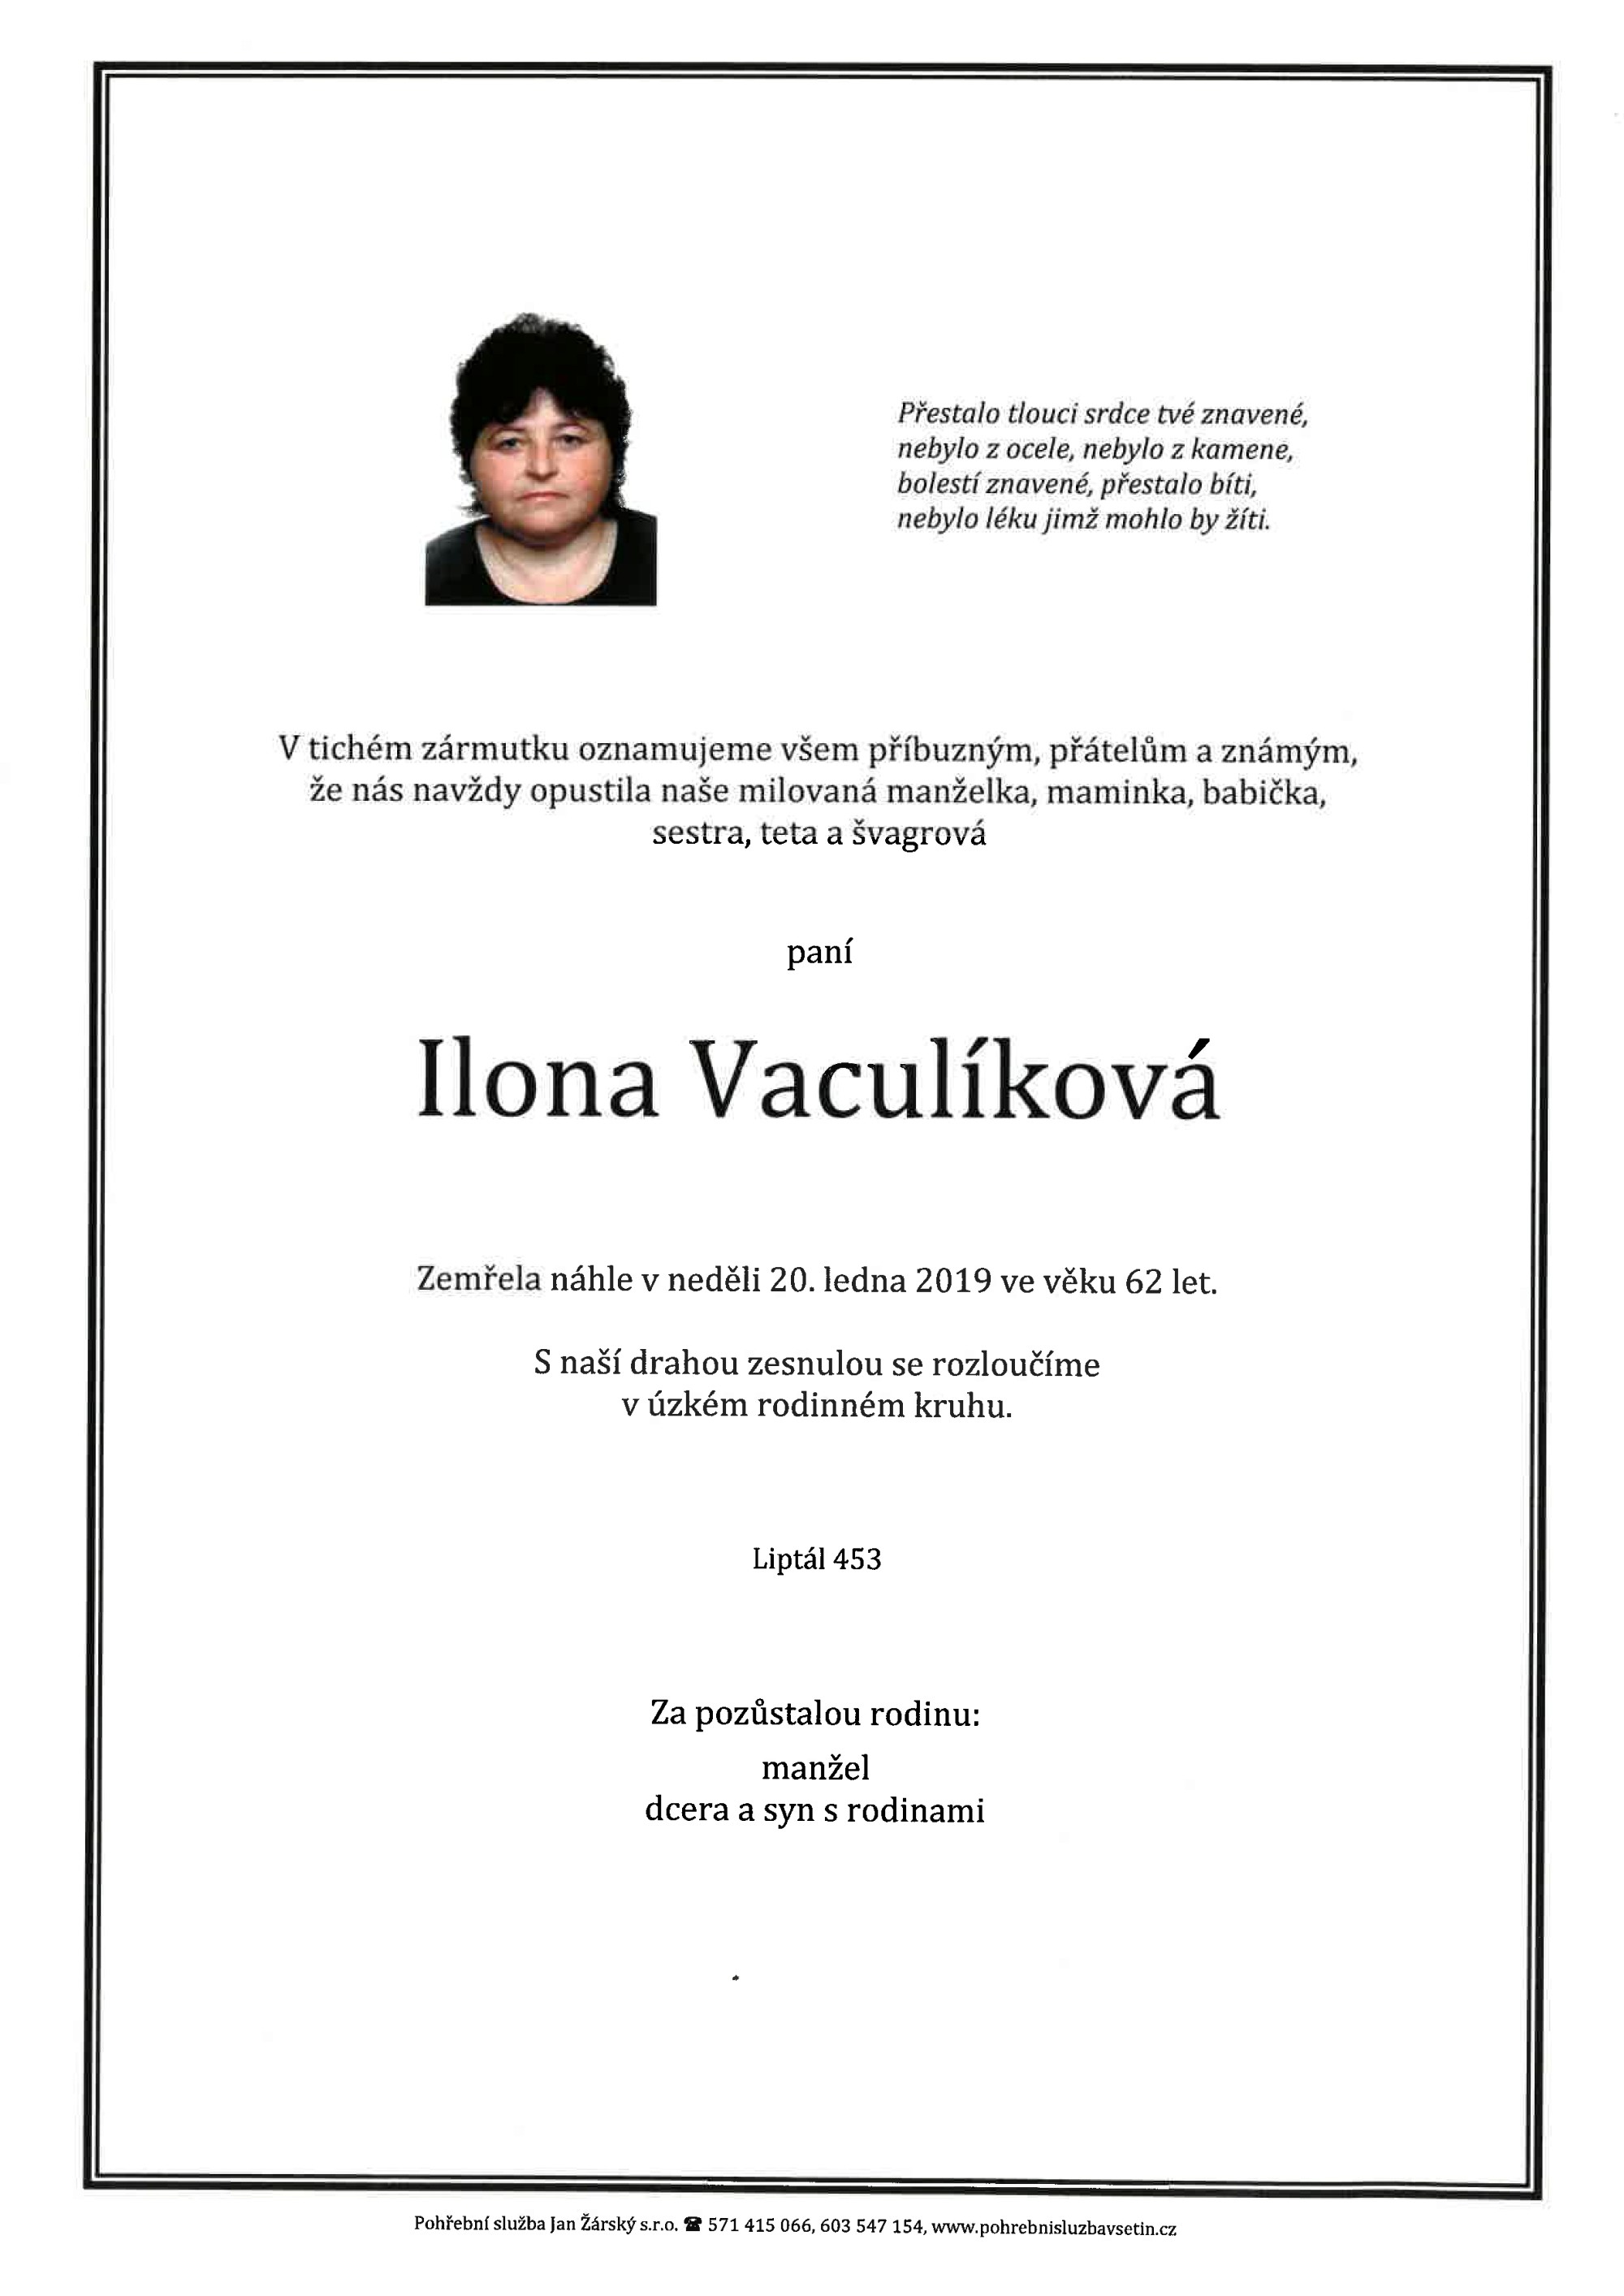 Ilona Vaculíková